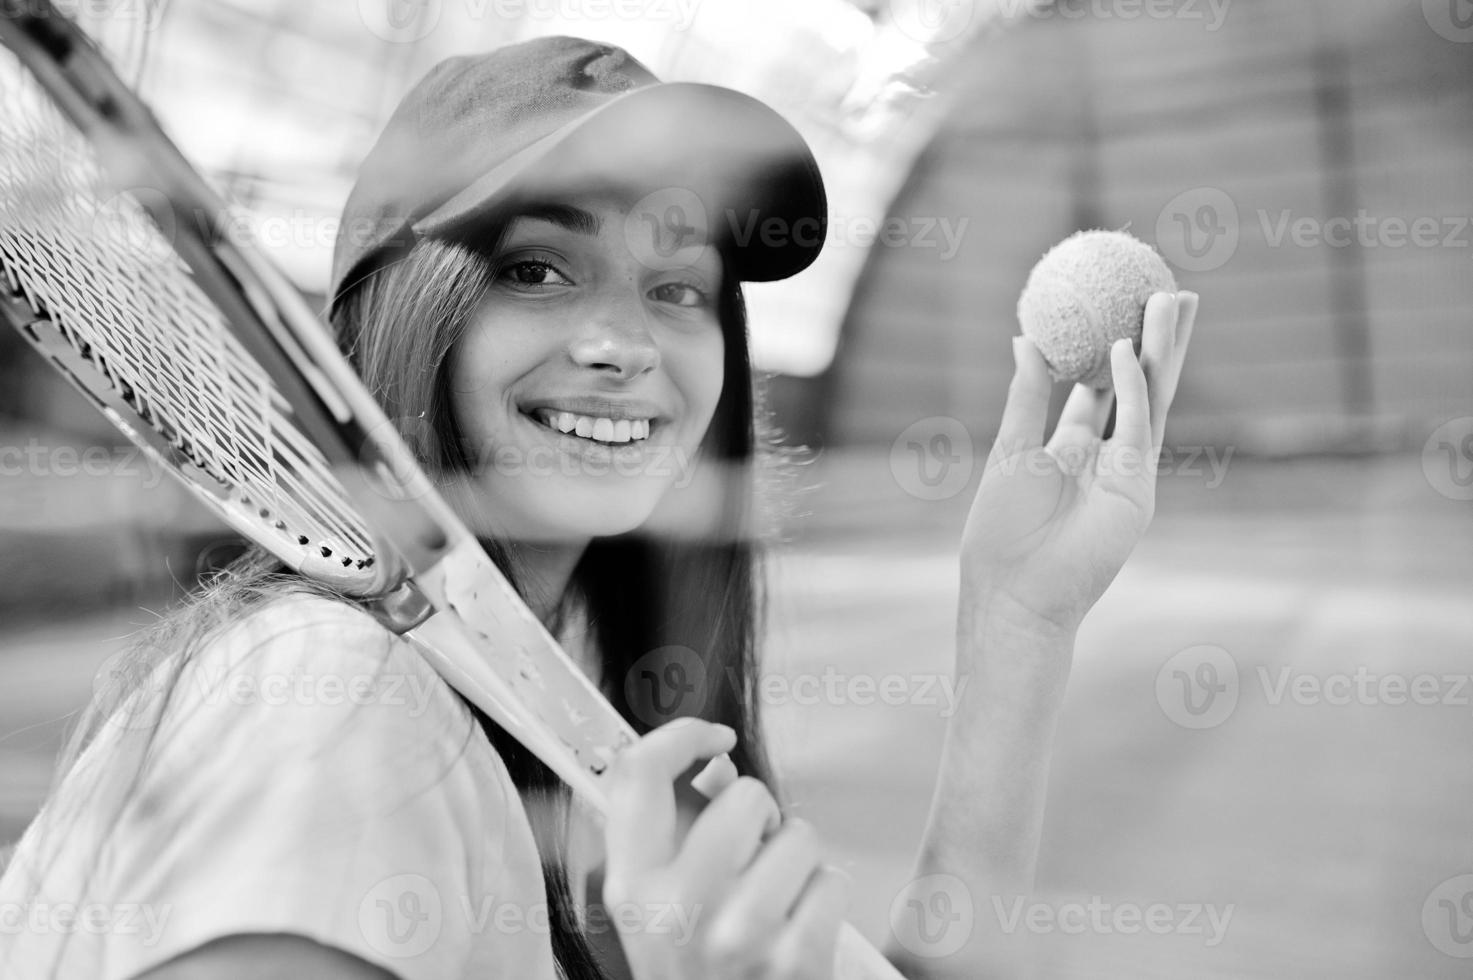 jonge sportieve meisjesspeler met tennisracket op tennisbaan. foto